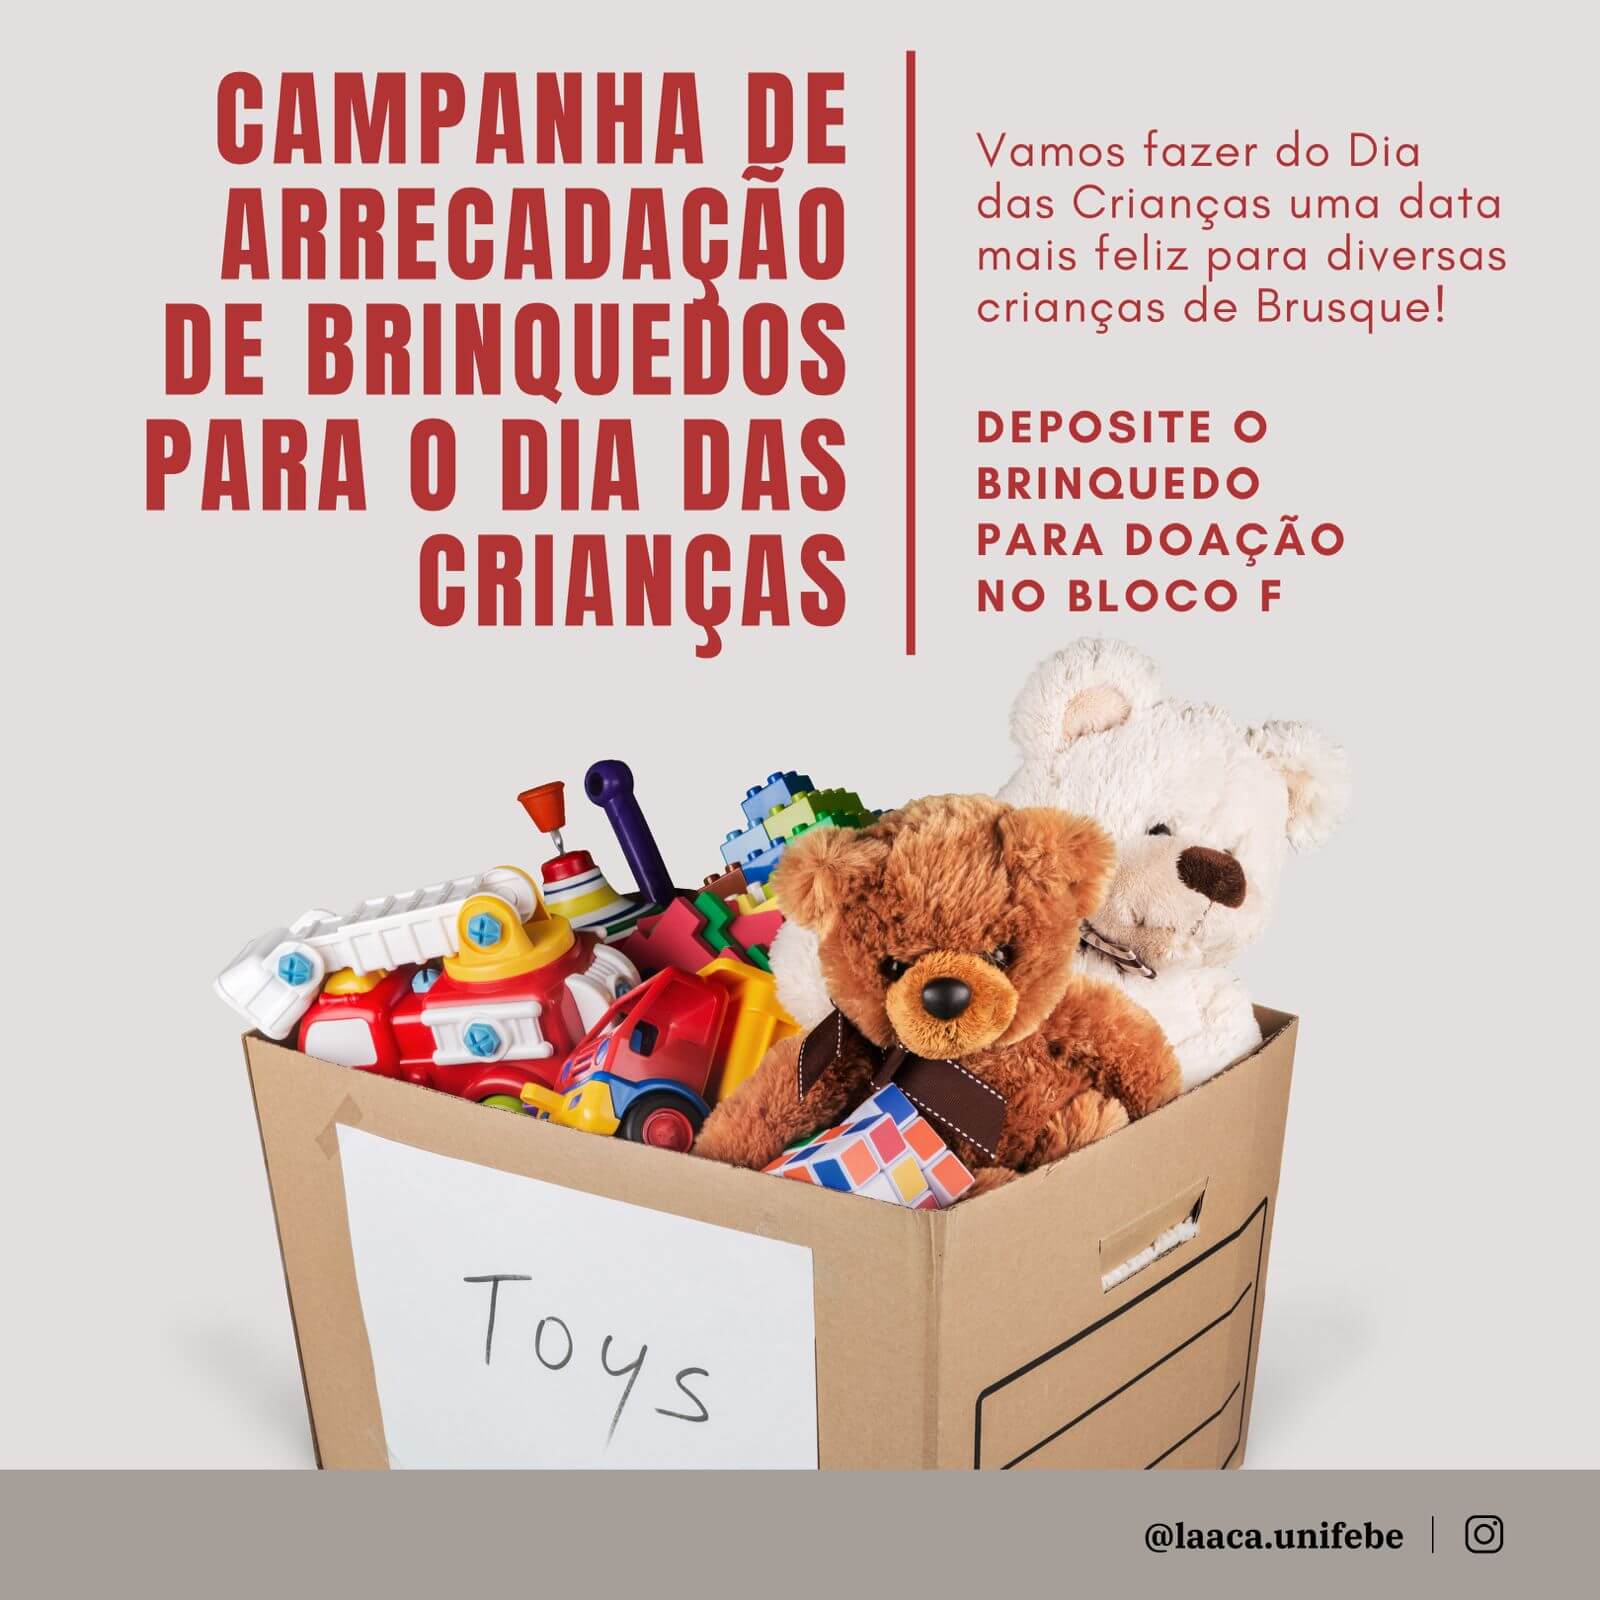 Liga Acadêmica de Anatomia da UNIFEBE realiza campanha de arrecadação de brinquedos para crianças